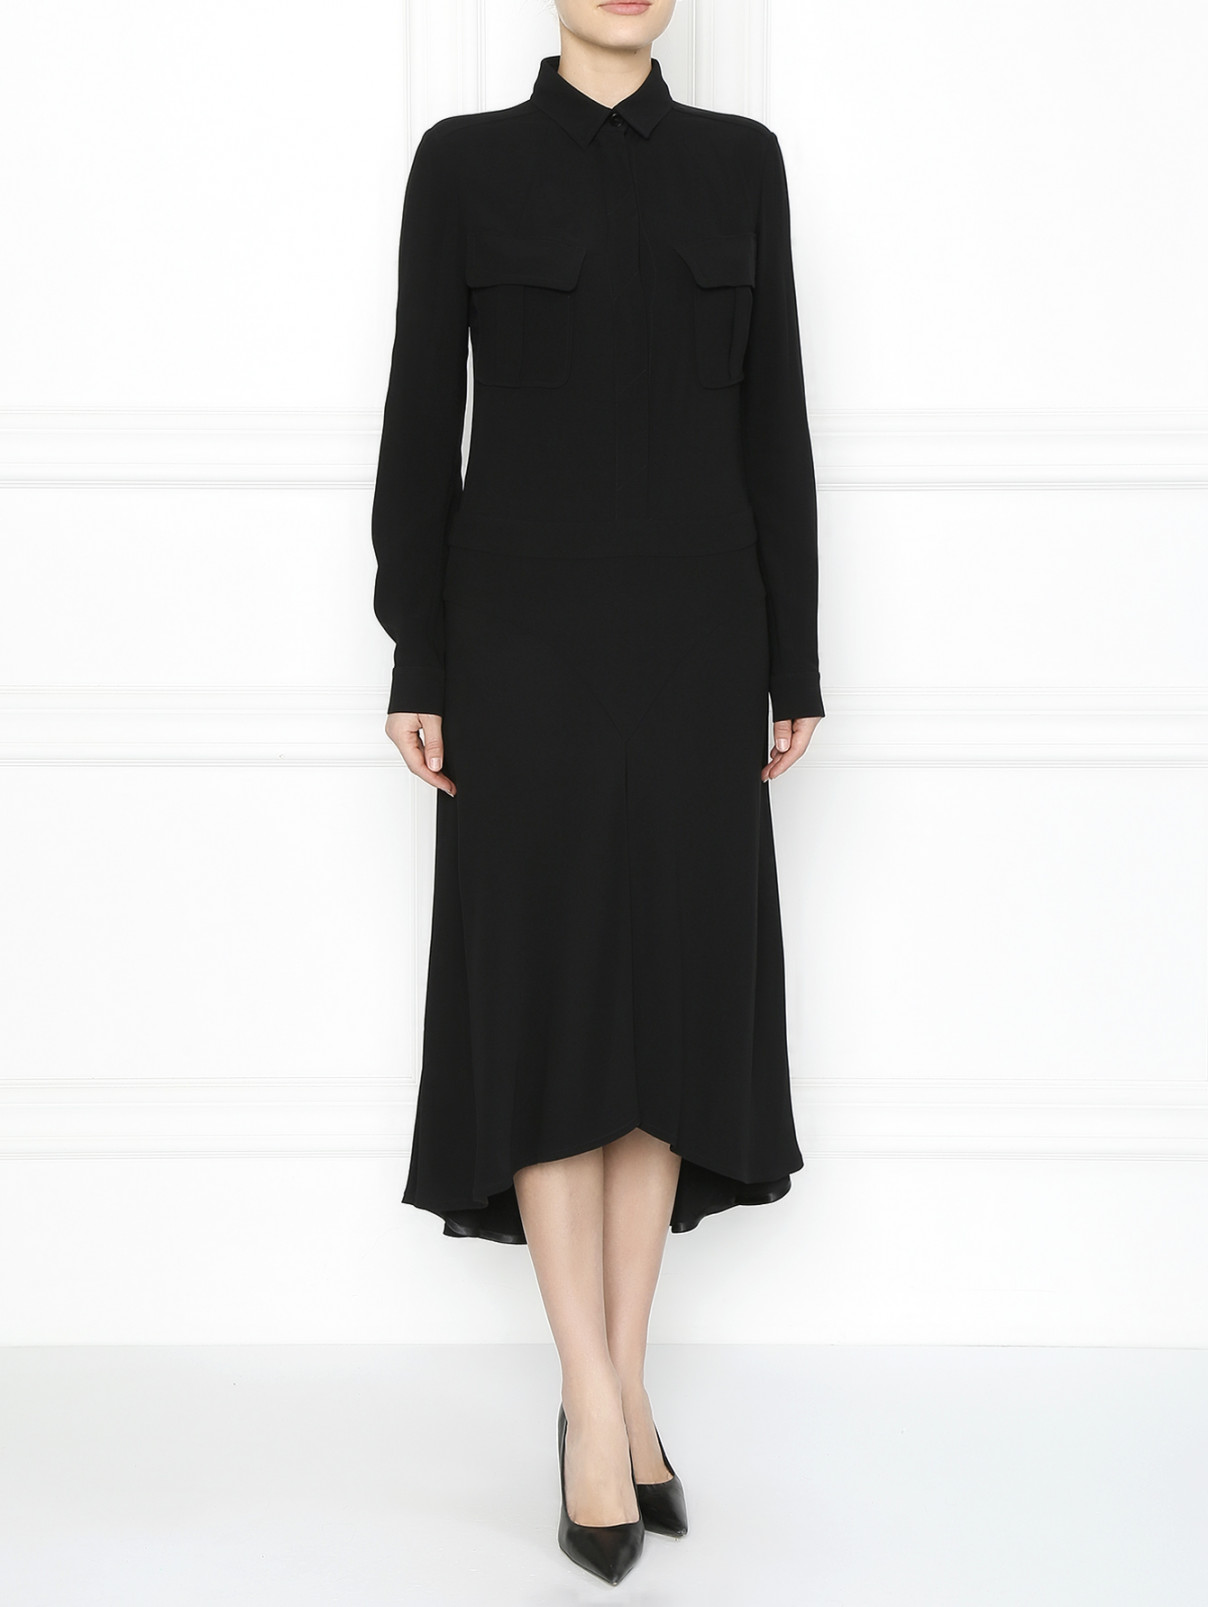 Платье-миди с накладными карманами Barbara Bui  –  Модель Общий вид  – Цвет:  Черный